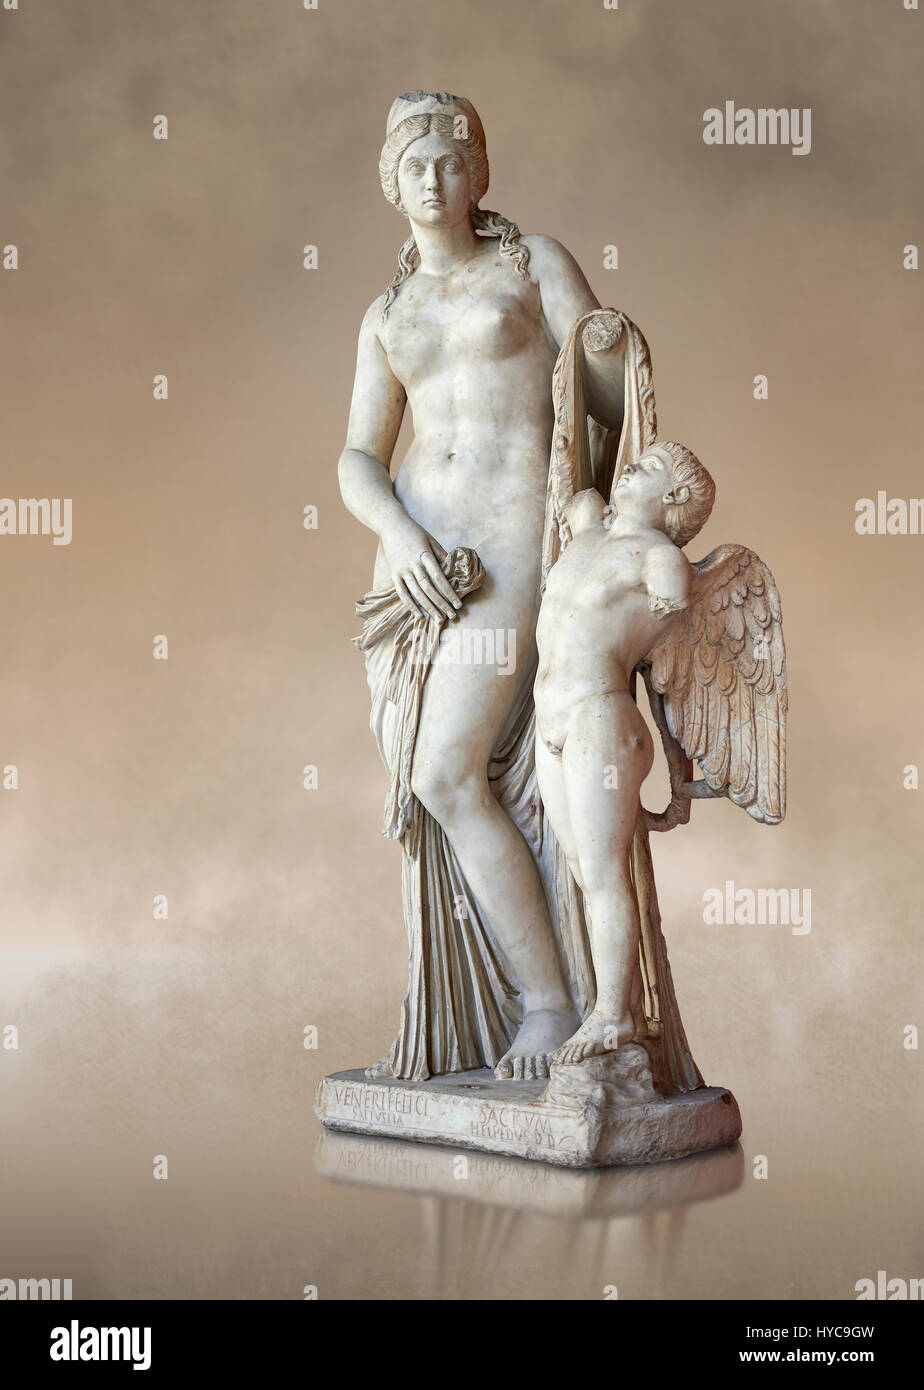 Gesicht auf drei Viertel des 2. Jahrhunderts römische Statue der Venus, bekannt als der Venere Felice, inspiriert von der hellenistischen Stsue Aphrodite Cnid Stockfoto